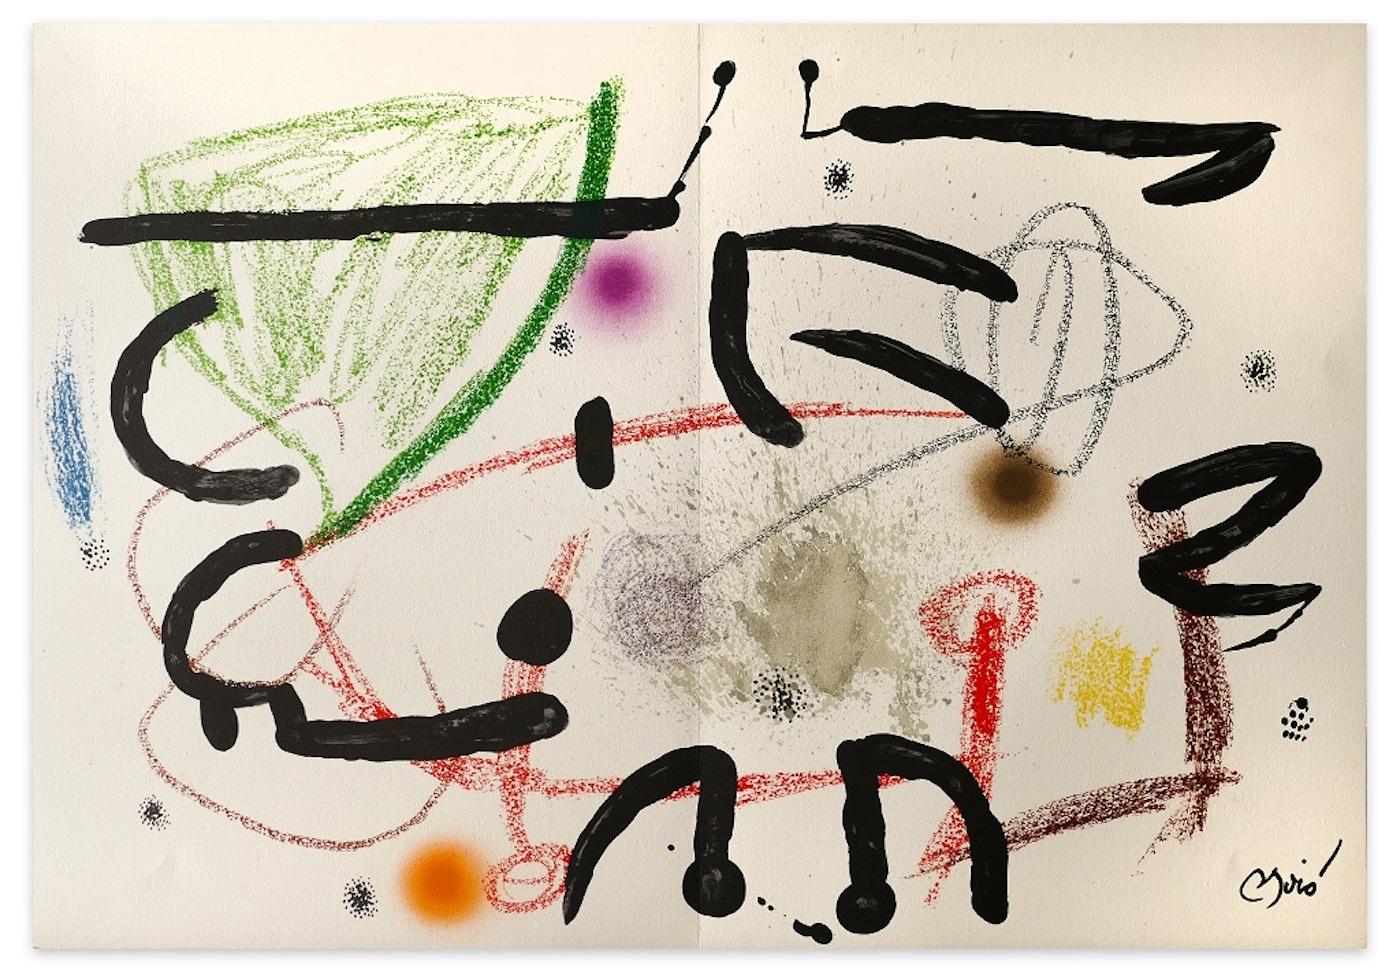 Joan Miró Abstract Print - Maravillas con Variaciones Acrosticas - Original Lithograph by J. Mirò - 1975